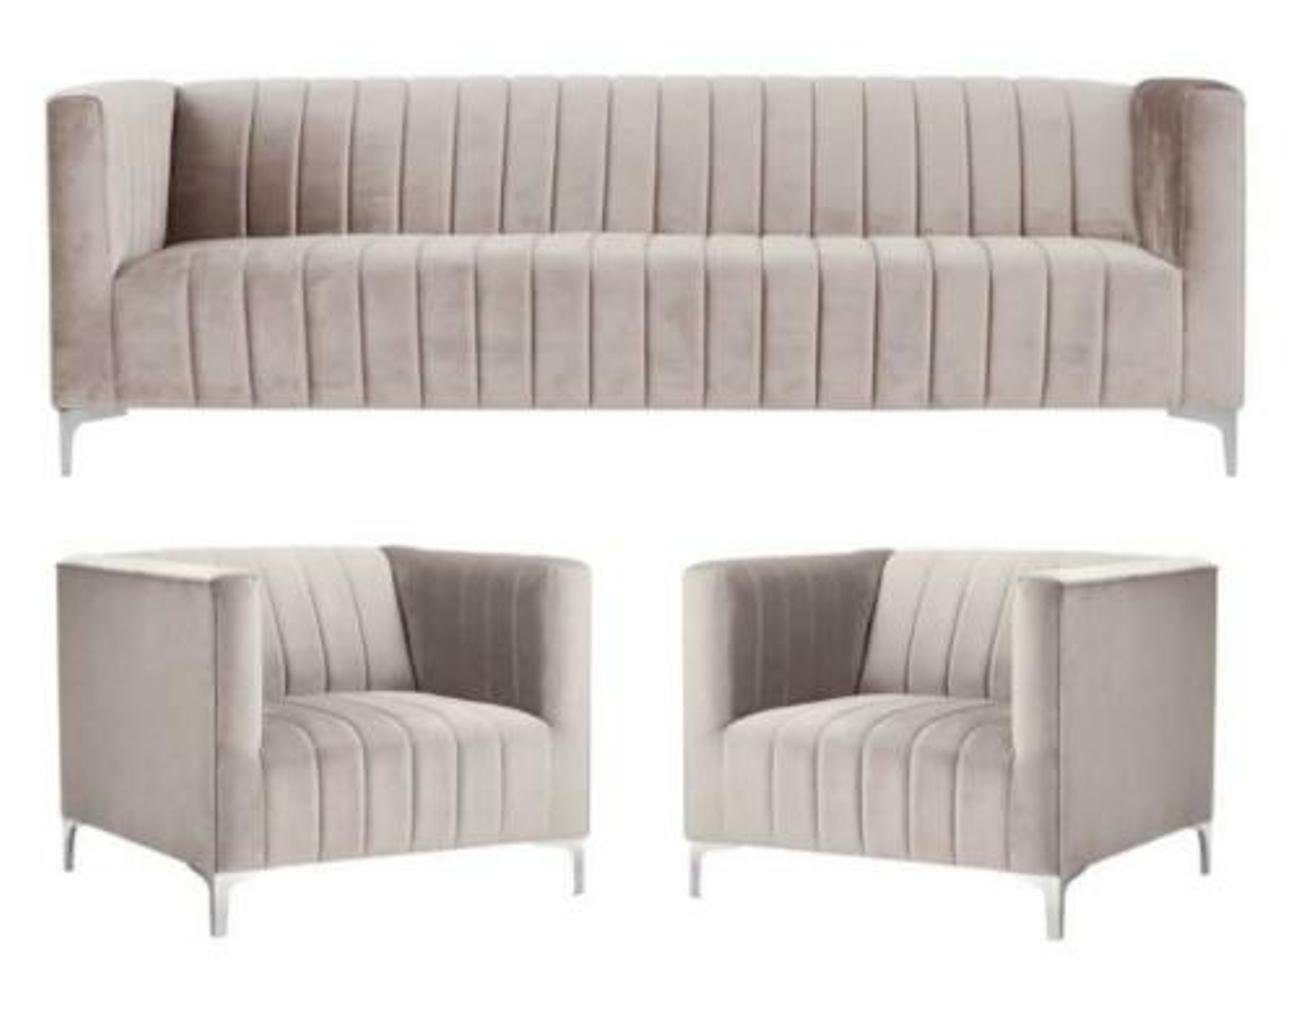 JVmoebel Sofa Beige Sofagarnitur 3+1+1 Sitzer Chesterfield Möbel Modern Design, Made in Europe